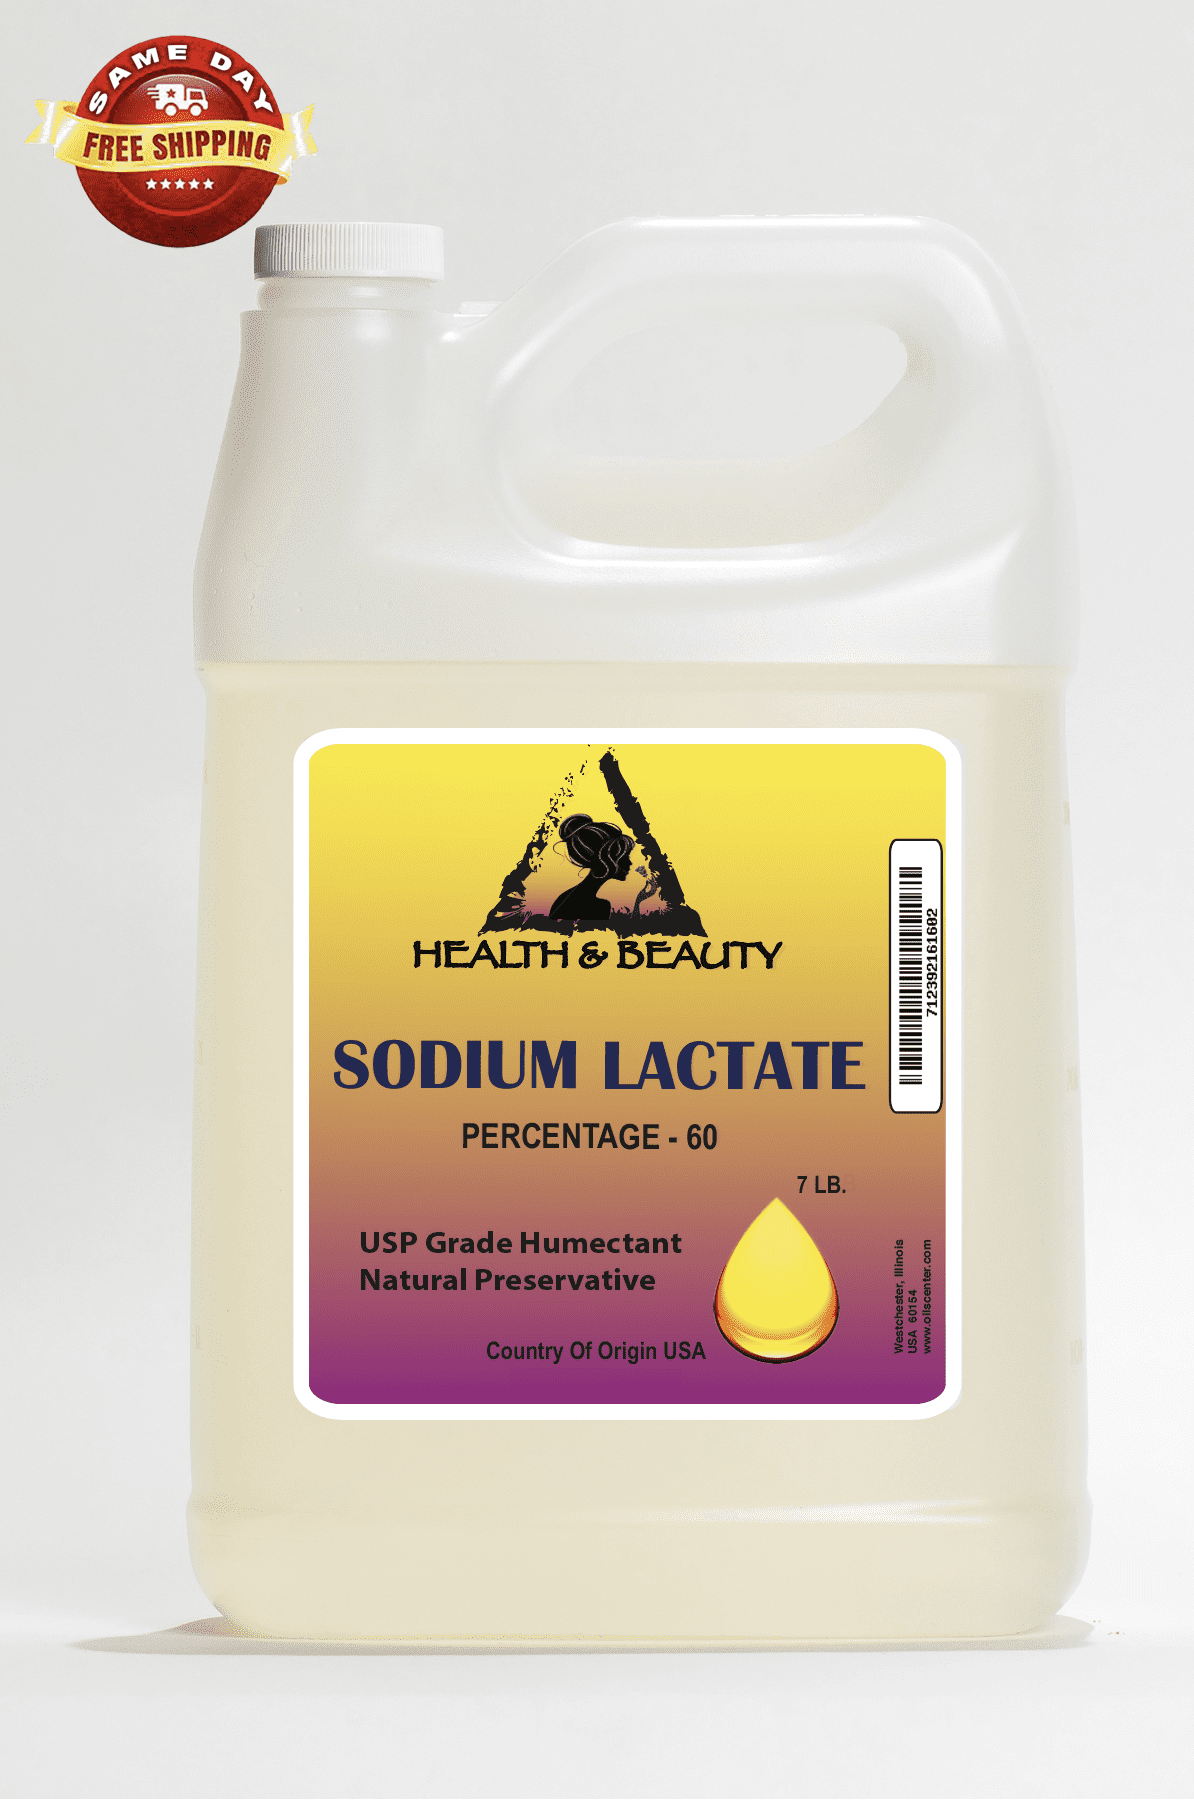 DORNISH STARCH SODIUM LACTATE 60% USP SOLUTION 5.29 OZ for Soap